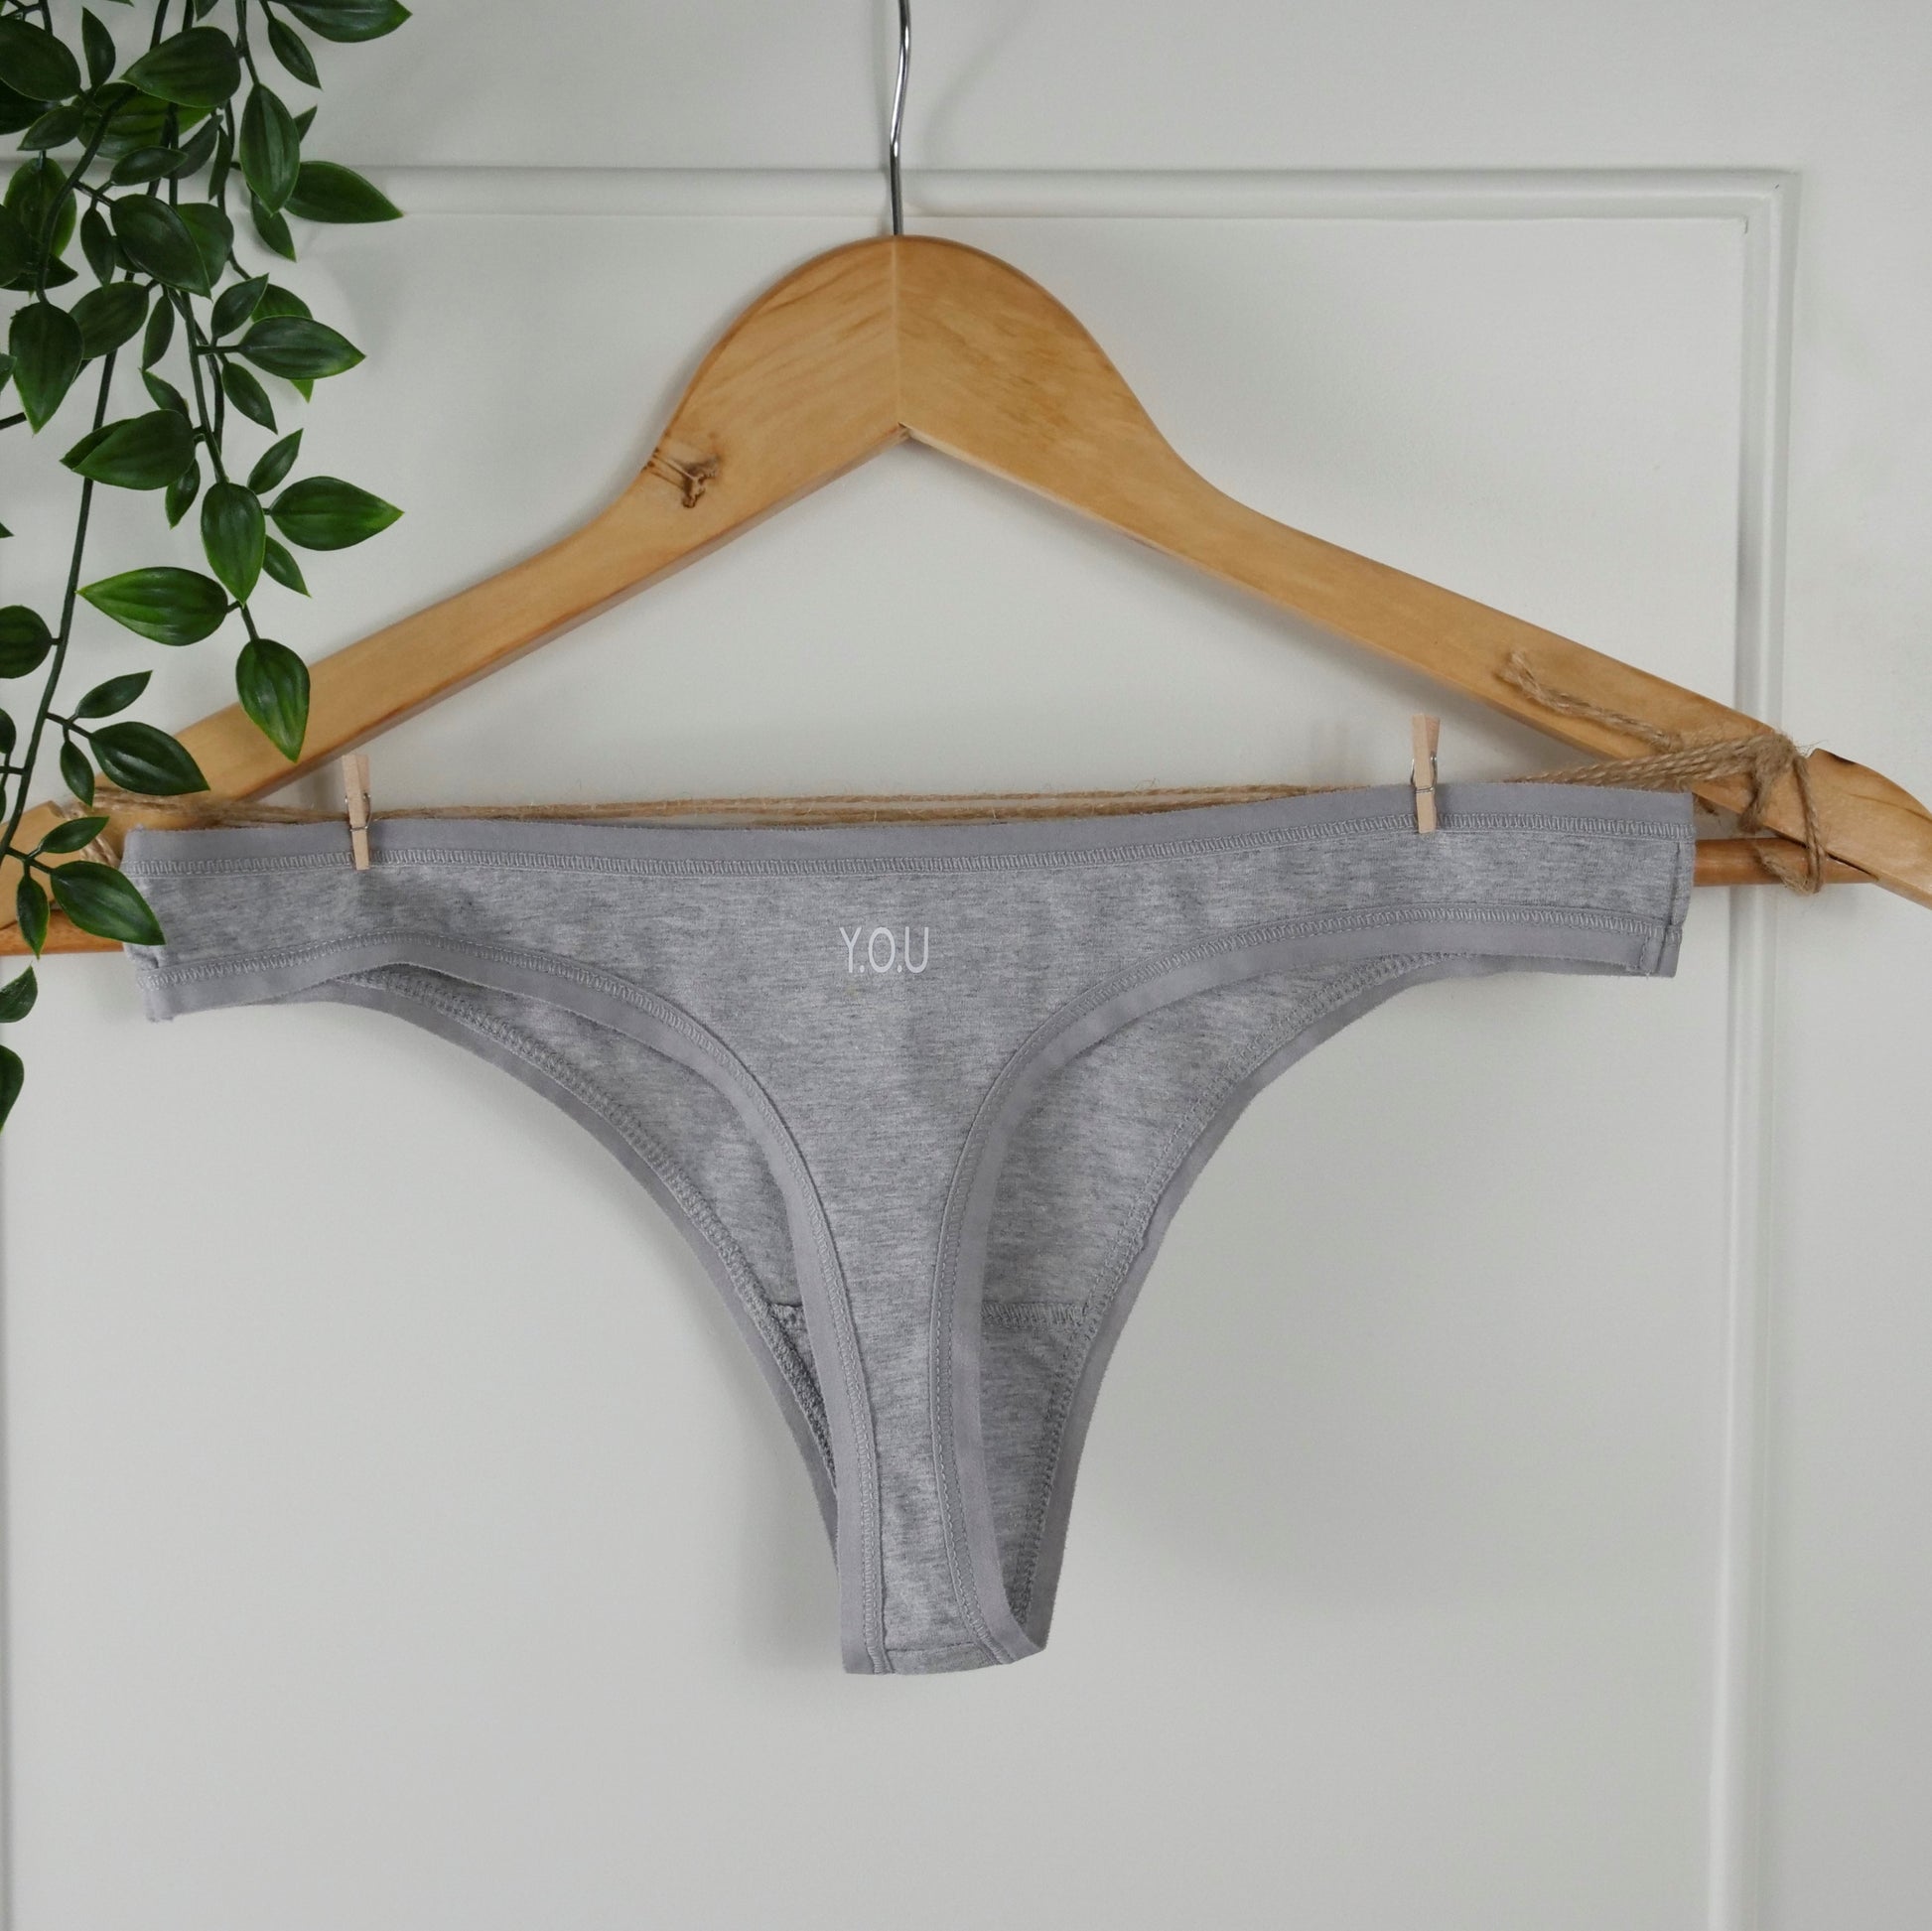 Grey, Women's Underwear & Panties